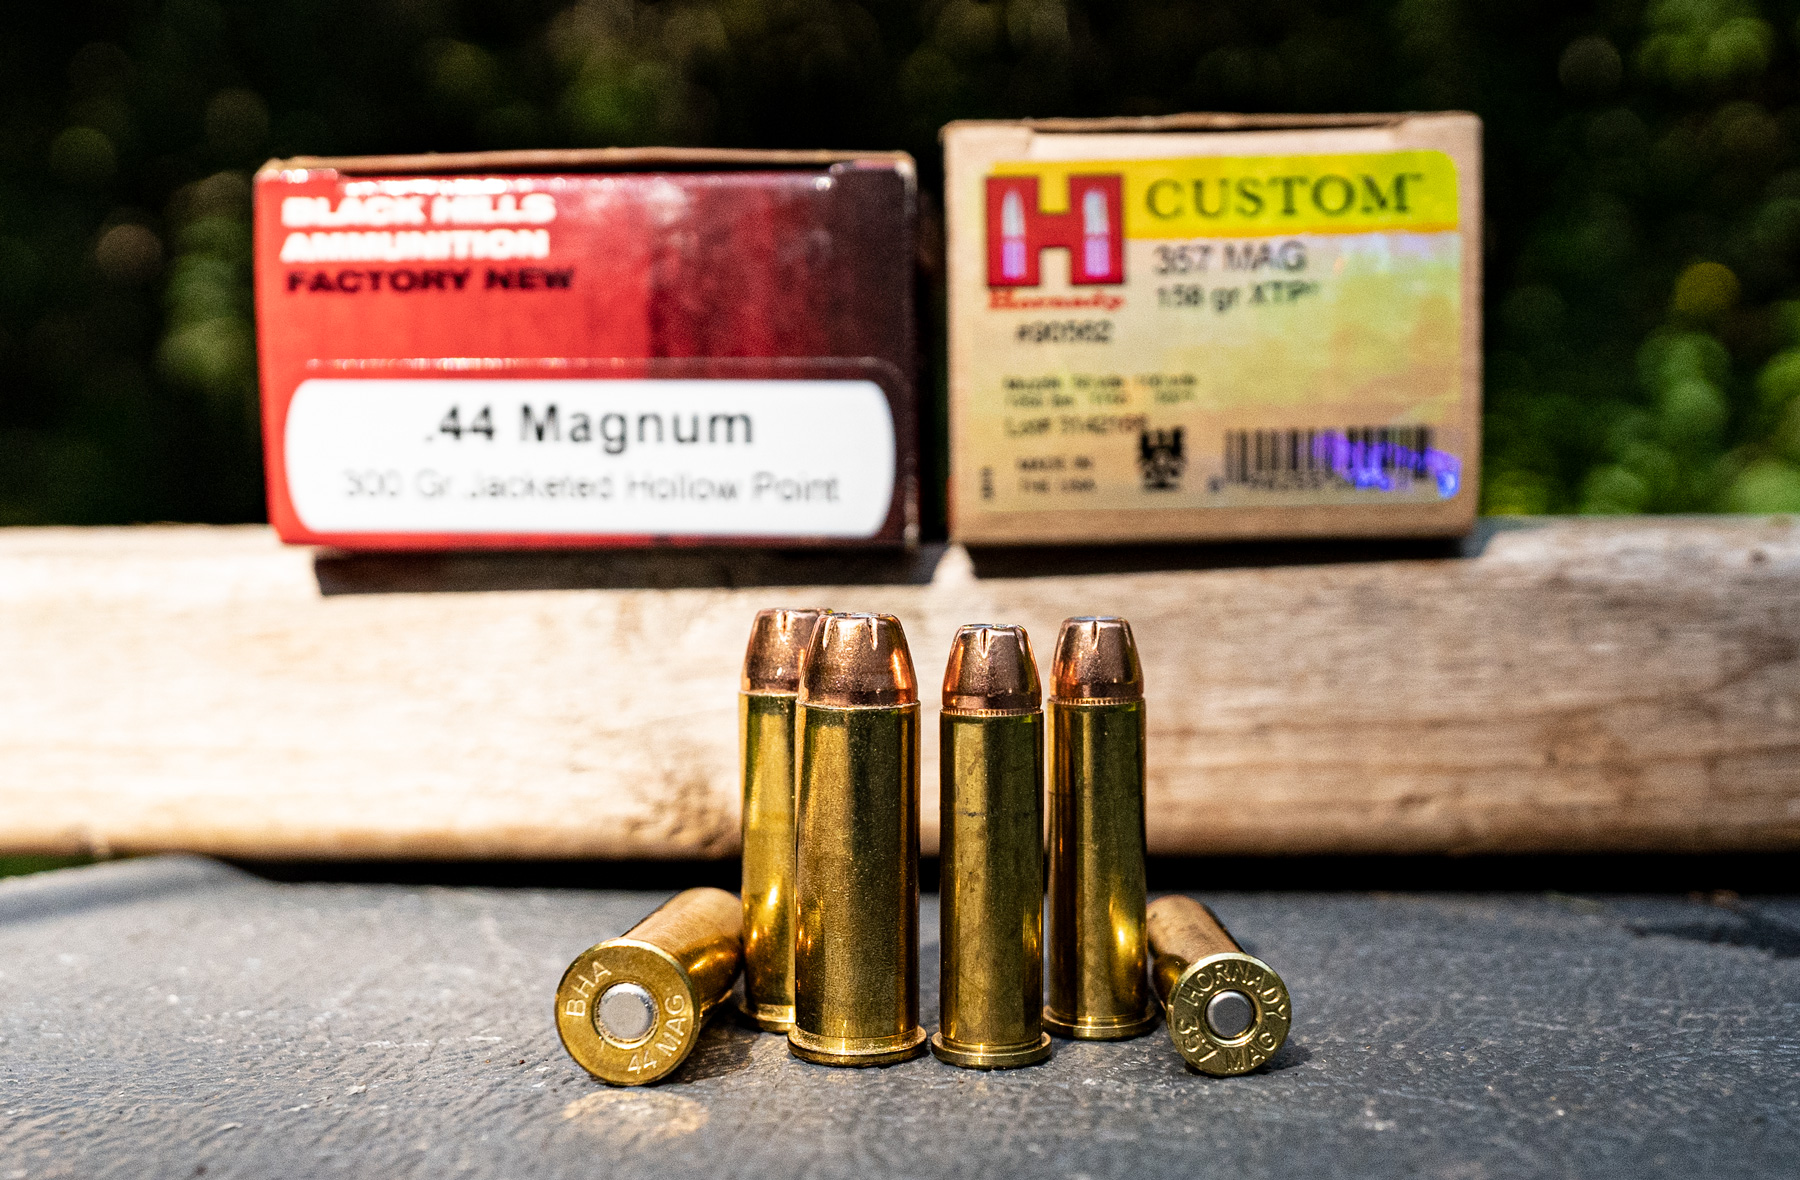 44 magnum ammo vs 357 magnum ammo